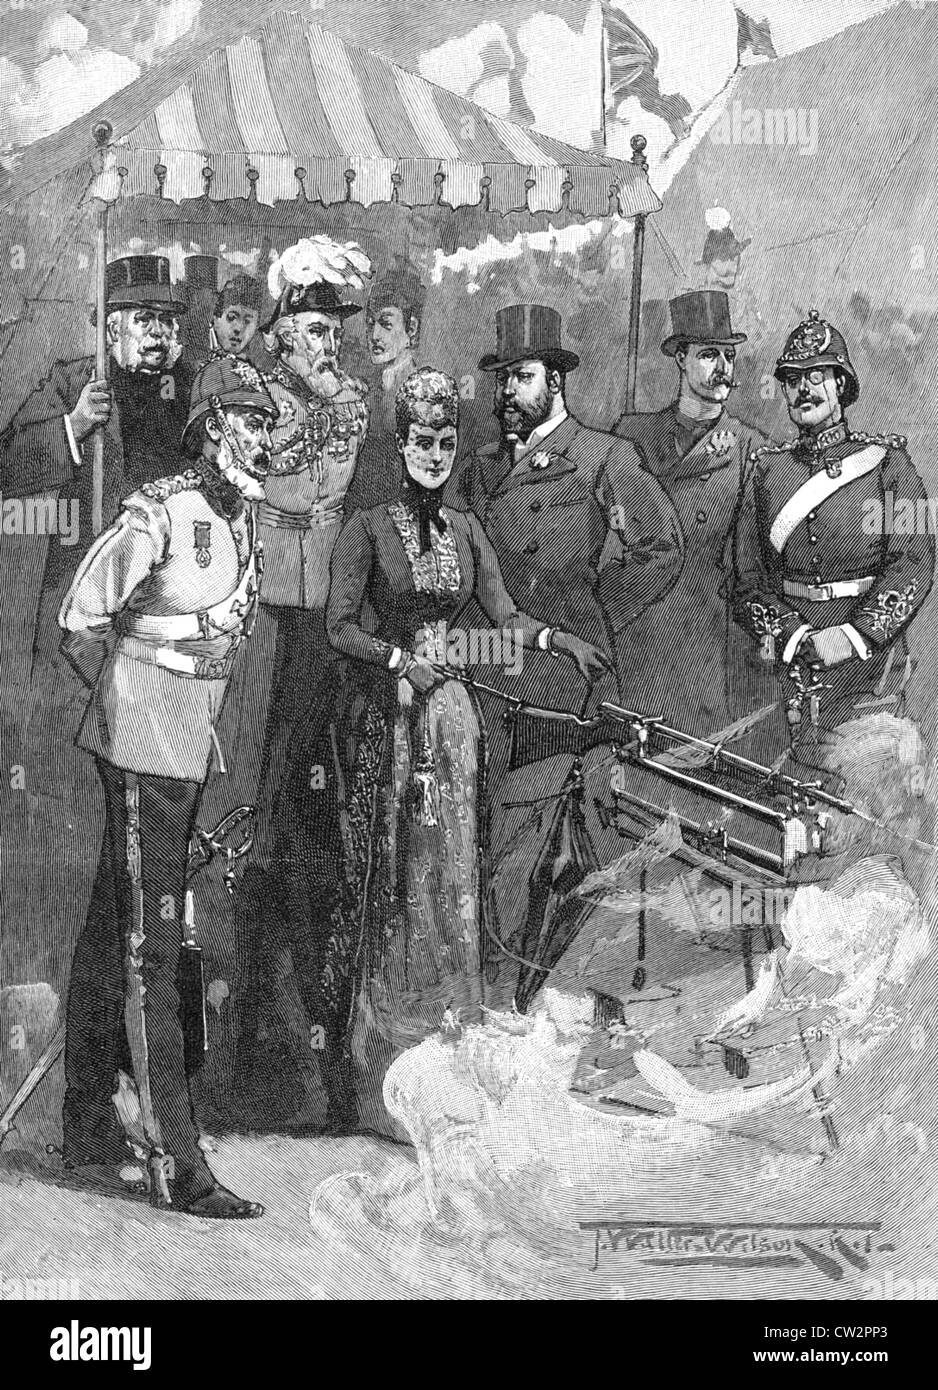 ALEXANDRA DELLA DANIMARCA, principessa di Galles, spara il primo colpo al Bisley nel 1890 Foto Stock